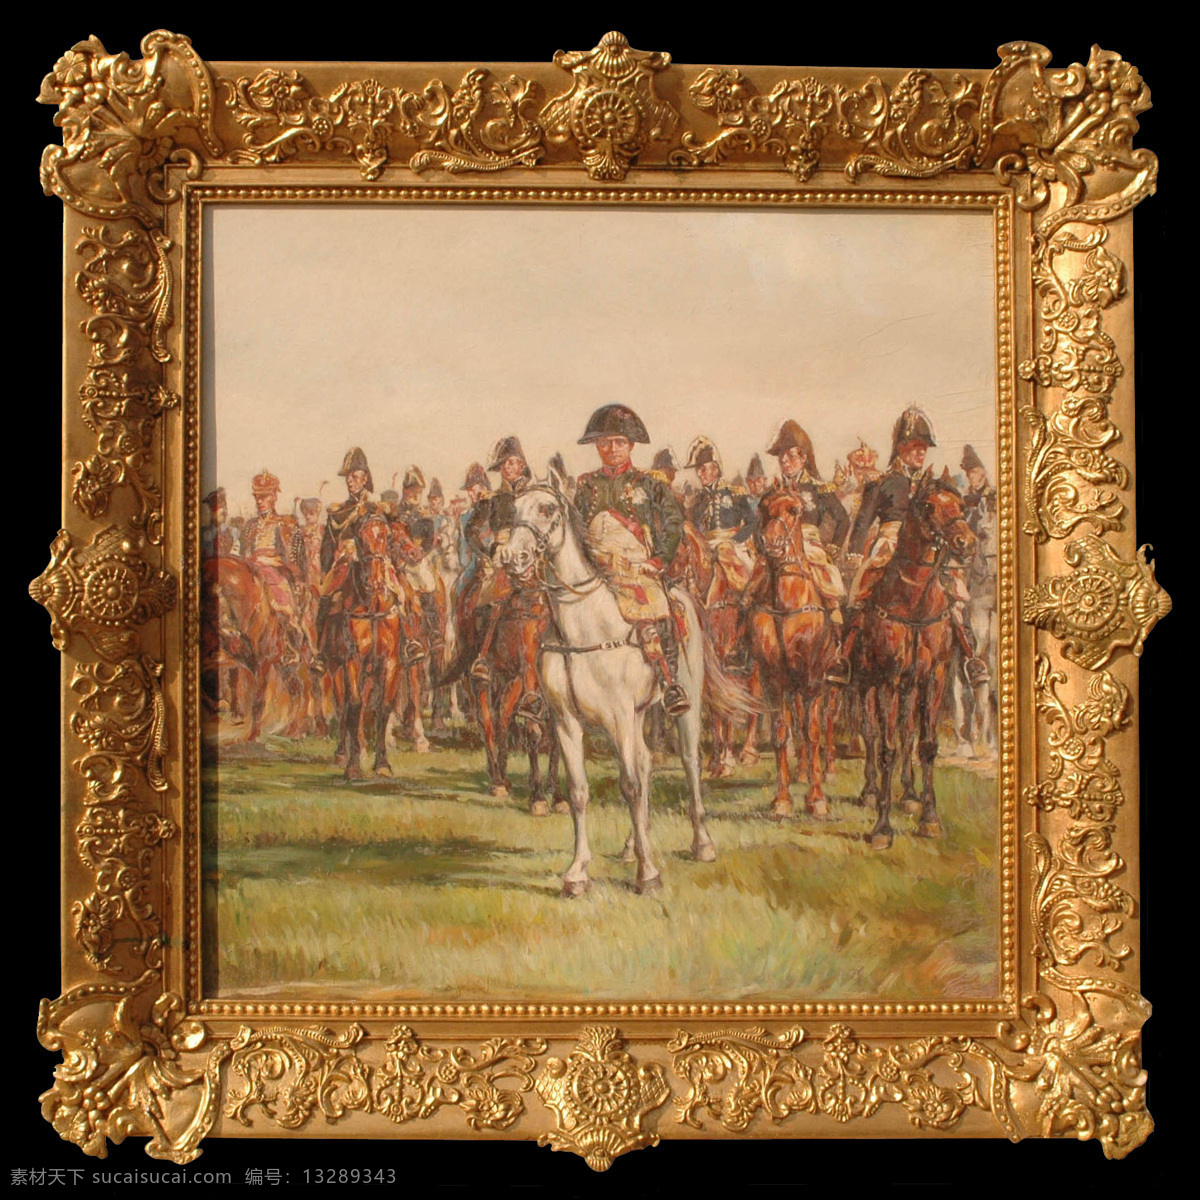 油画将军 拿破仑 将军 出征 军队 骑兵 骑兵出征 油画 画框 西画 欧洲画 文艺复新 彩绘 装饰画 美术绘画 文化艺术